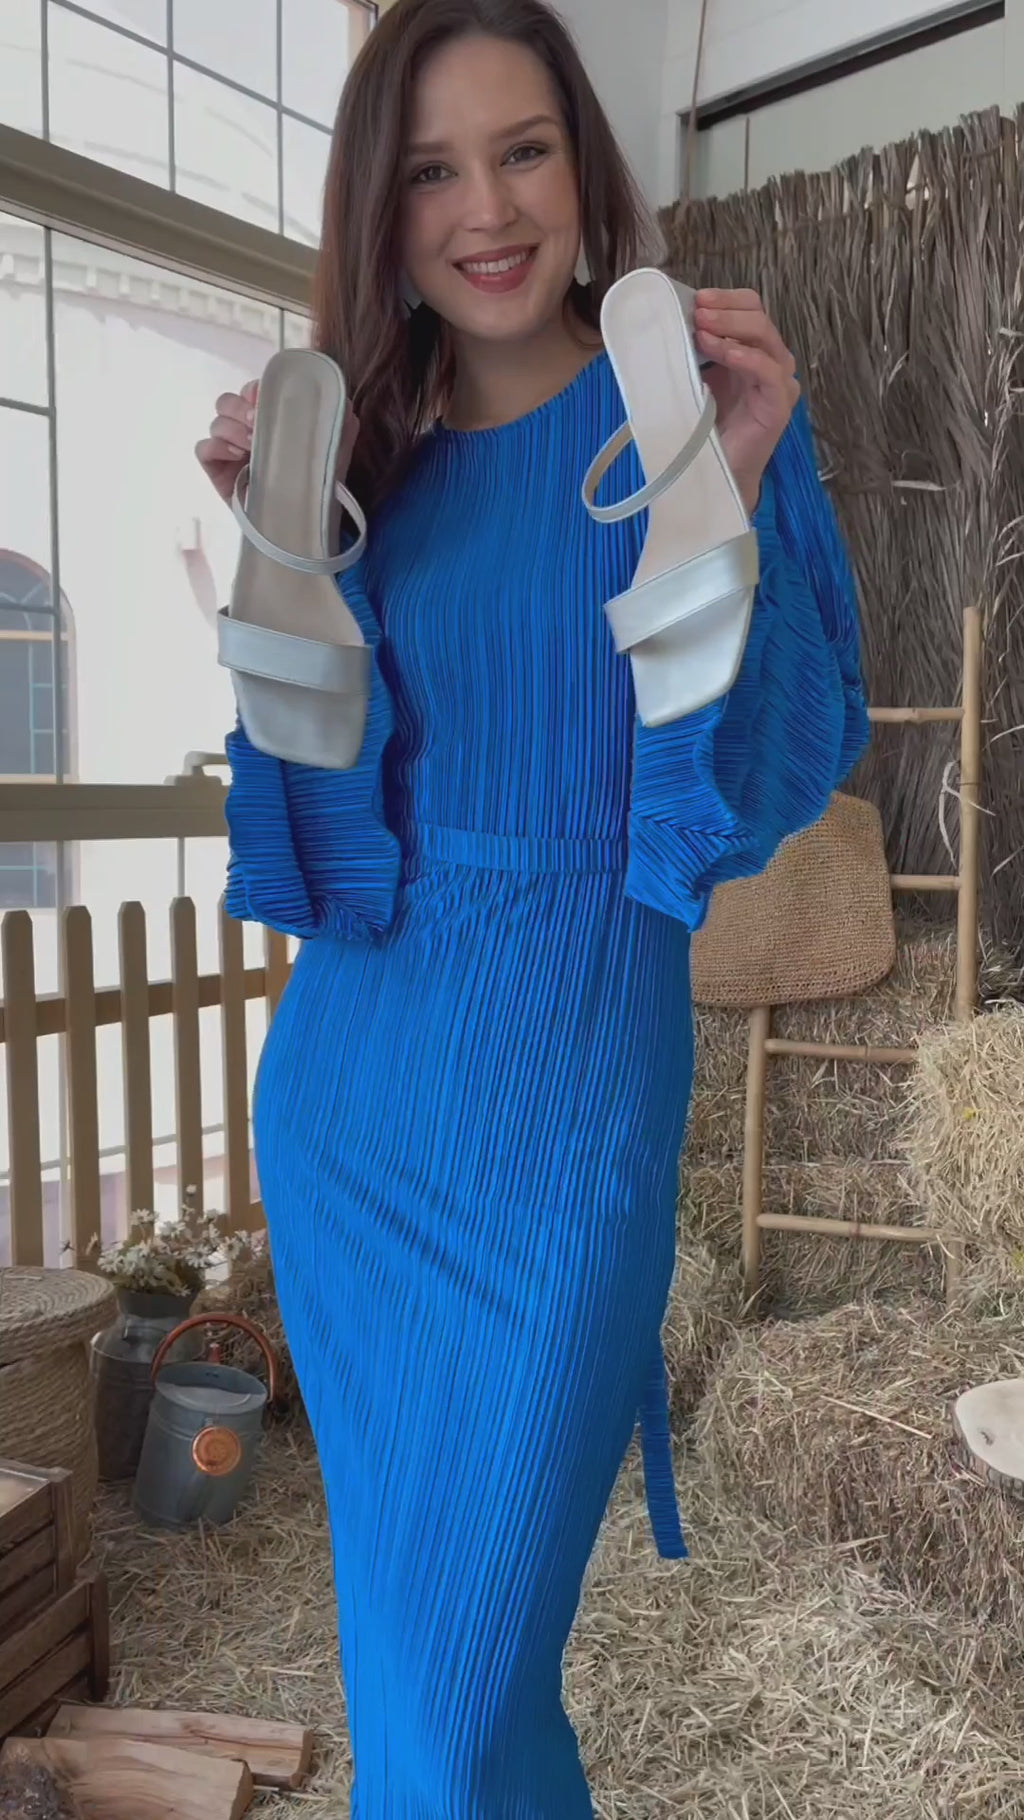 video of model wearing blue bodycon dress